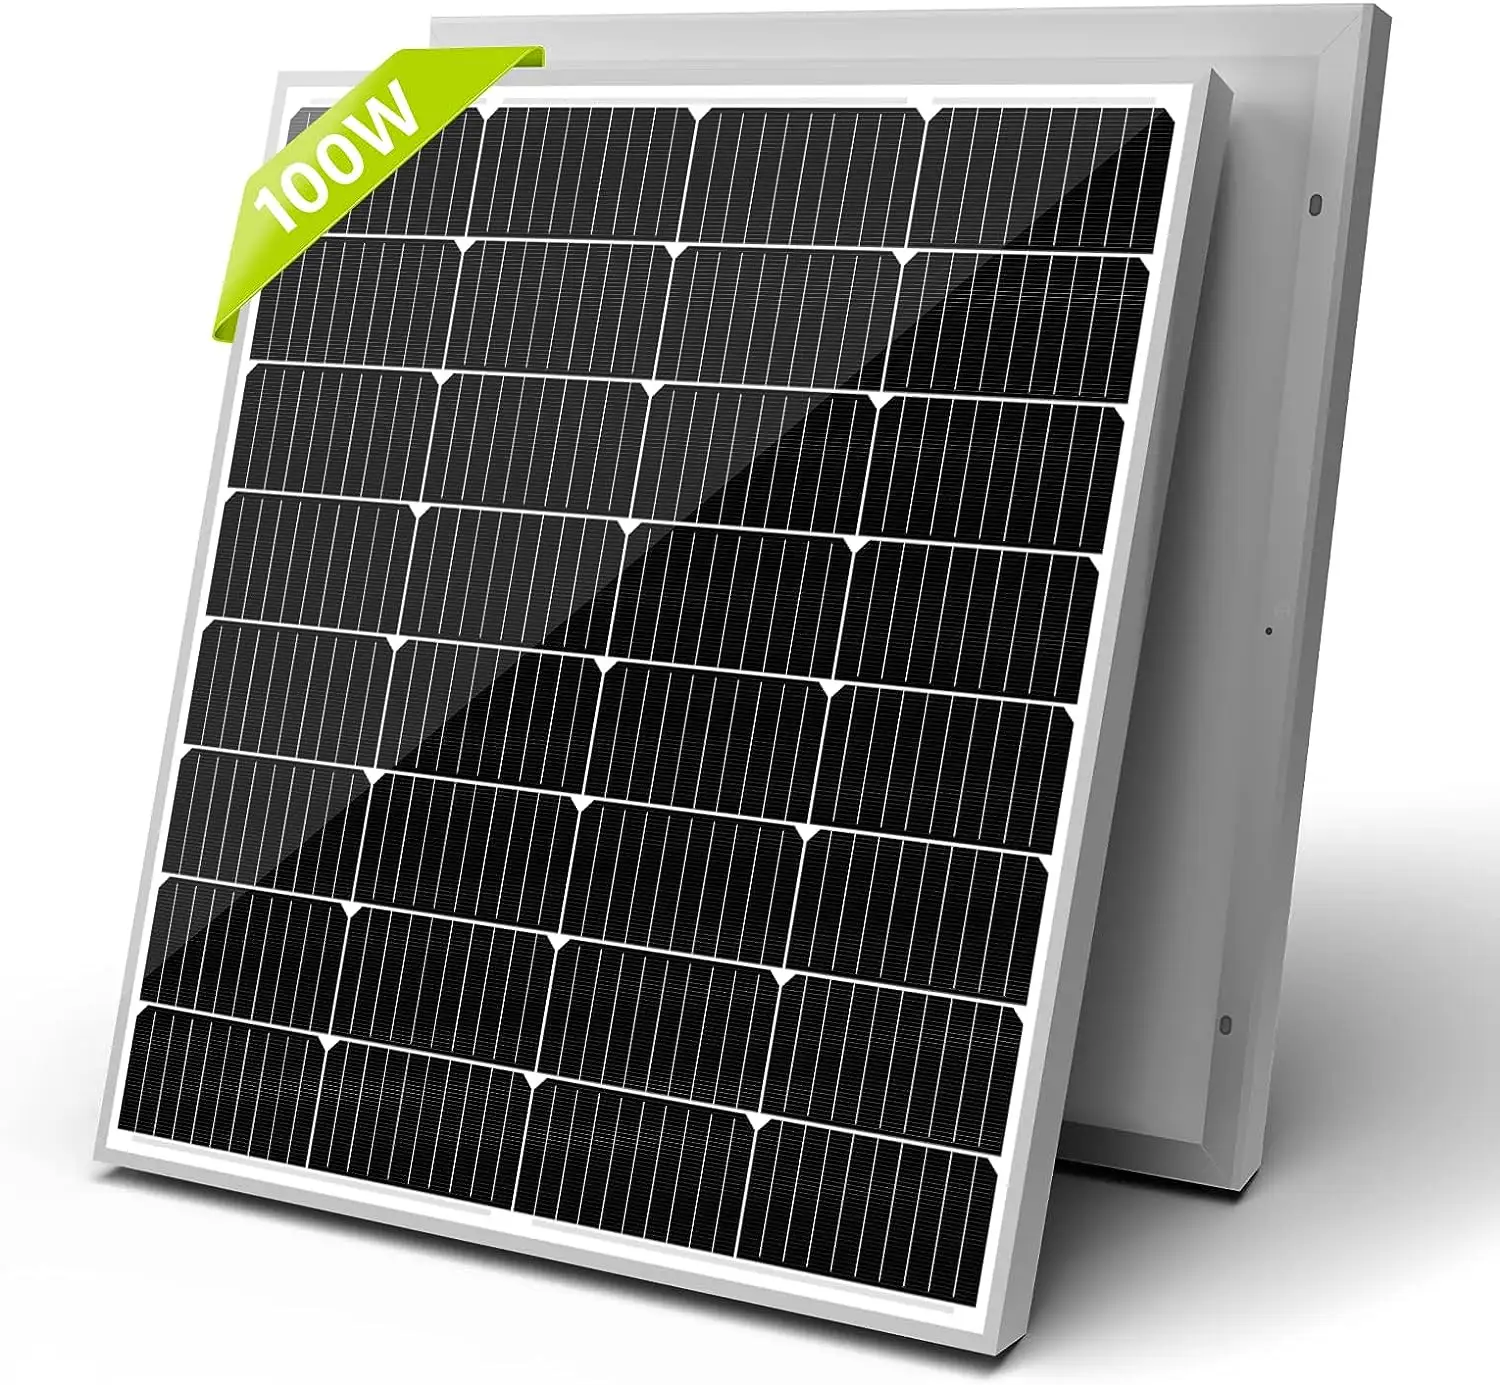 OEM size Paneles Solares 12V 24V 10W 20W 30W 60w 80w 120w Small Size Mono Cell solar power panel kit solar panels 200w